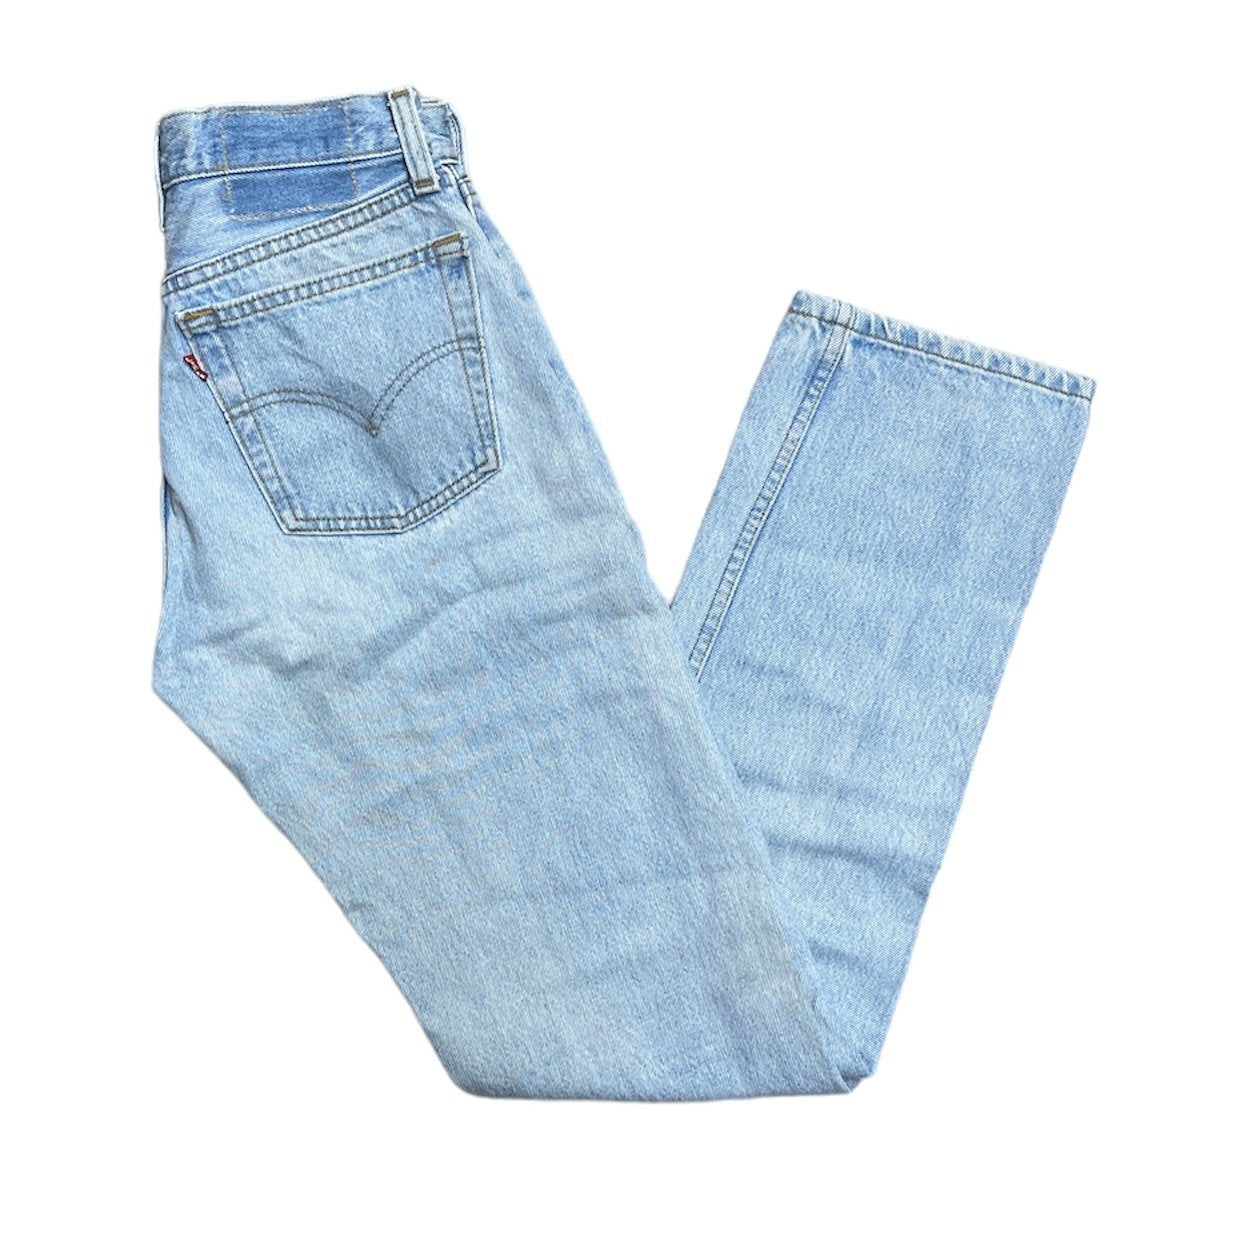 Vintage Levis 501 Light Blue Jeans (W26/L32) (W)